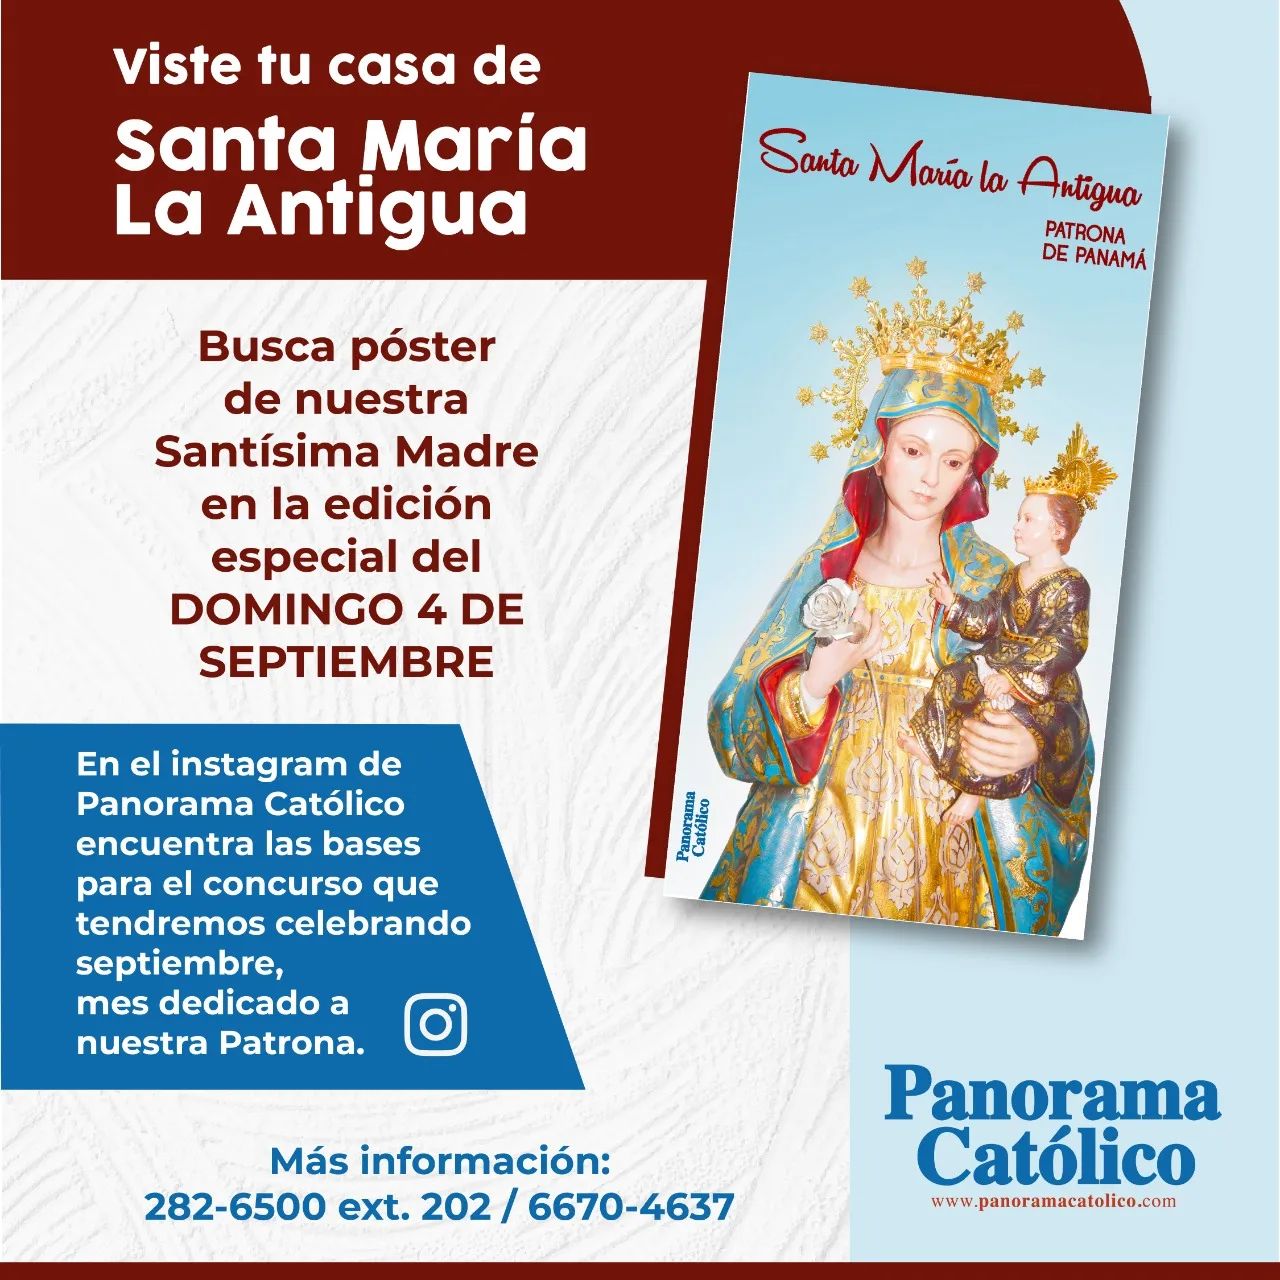 ¡Viste tu casa de Santa María la Antigua!, en septiembre